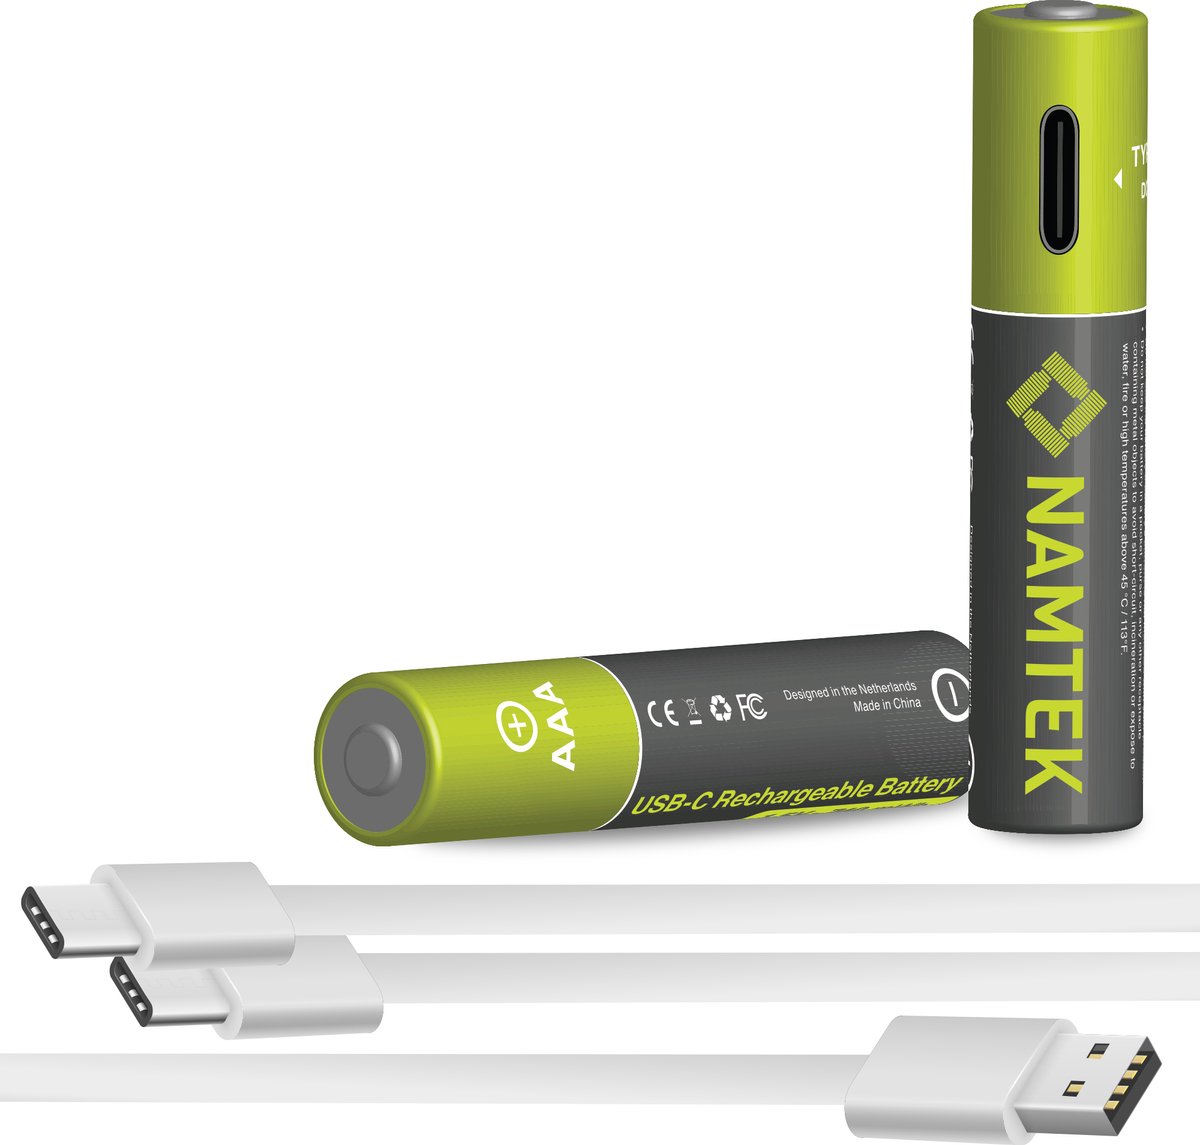 Namtek Oplaadbare batterijen AAA 1.5V 740 mWh met USB Type-C Kabel opladen - Lithium USB batterijen - Duurzame Keuze - 2 stuks